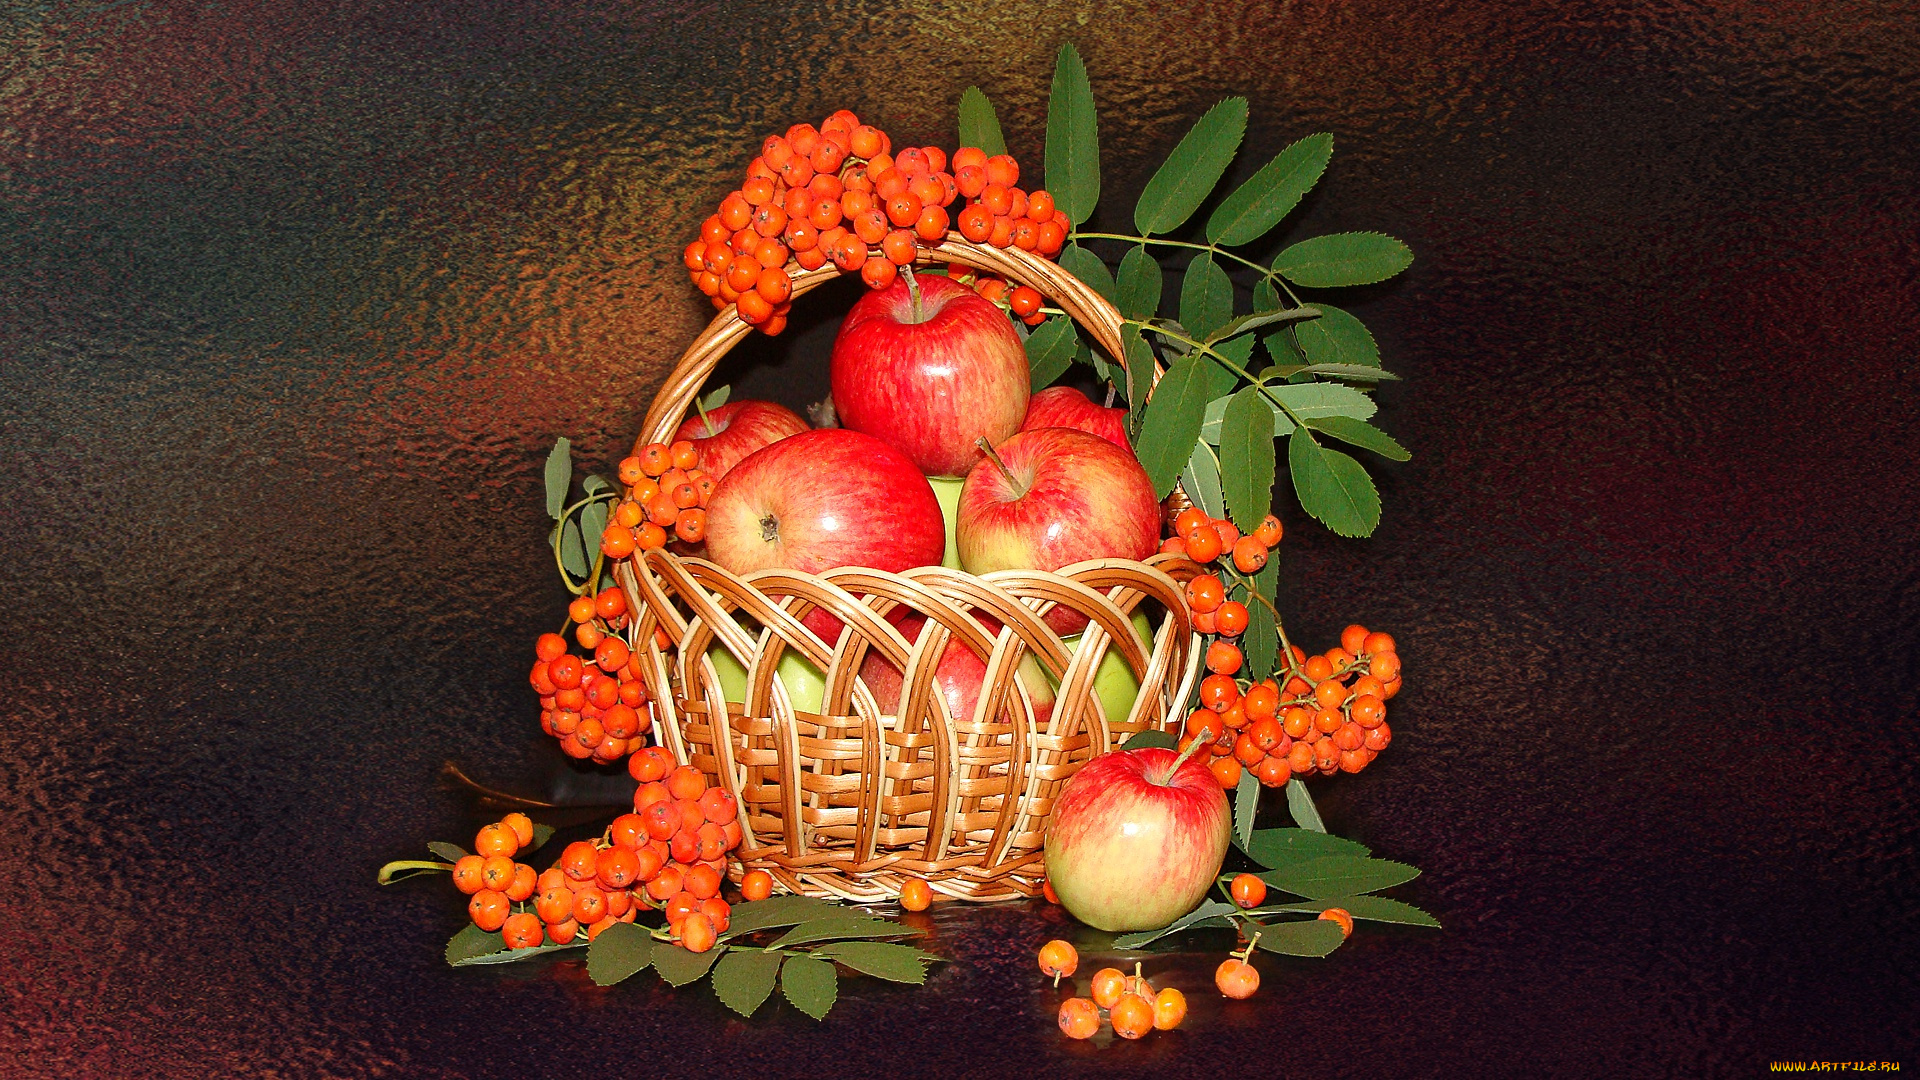 еда, фрукты, , ягоды, яблоки, натюрморт, корзинка, рябина, авторское, фото, елена, аникина